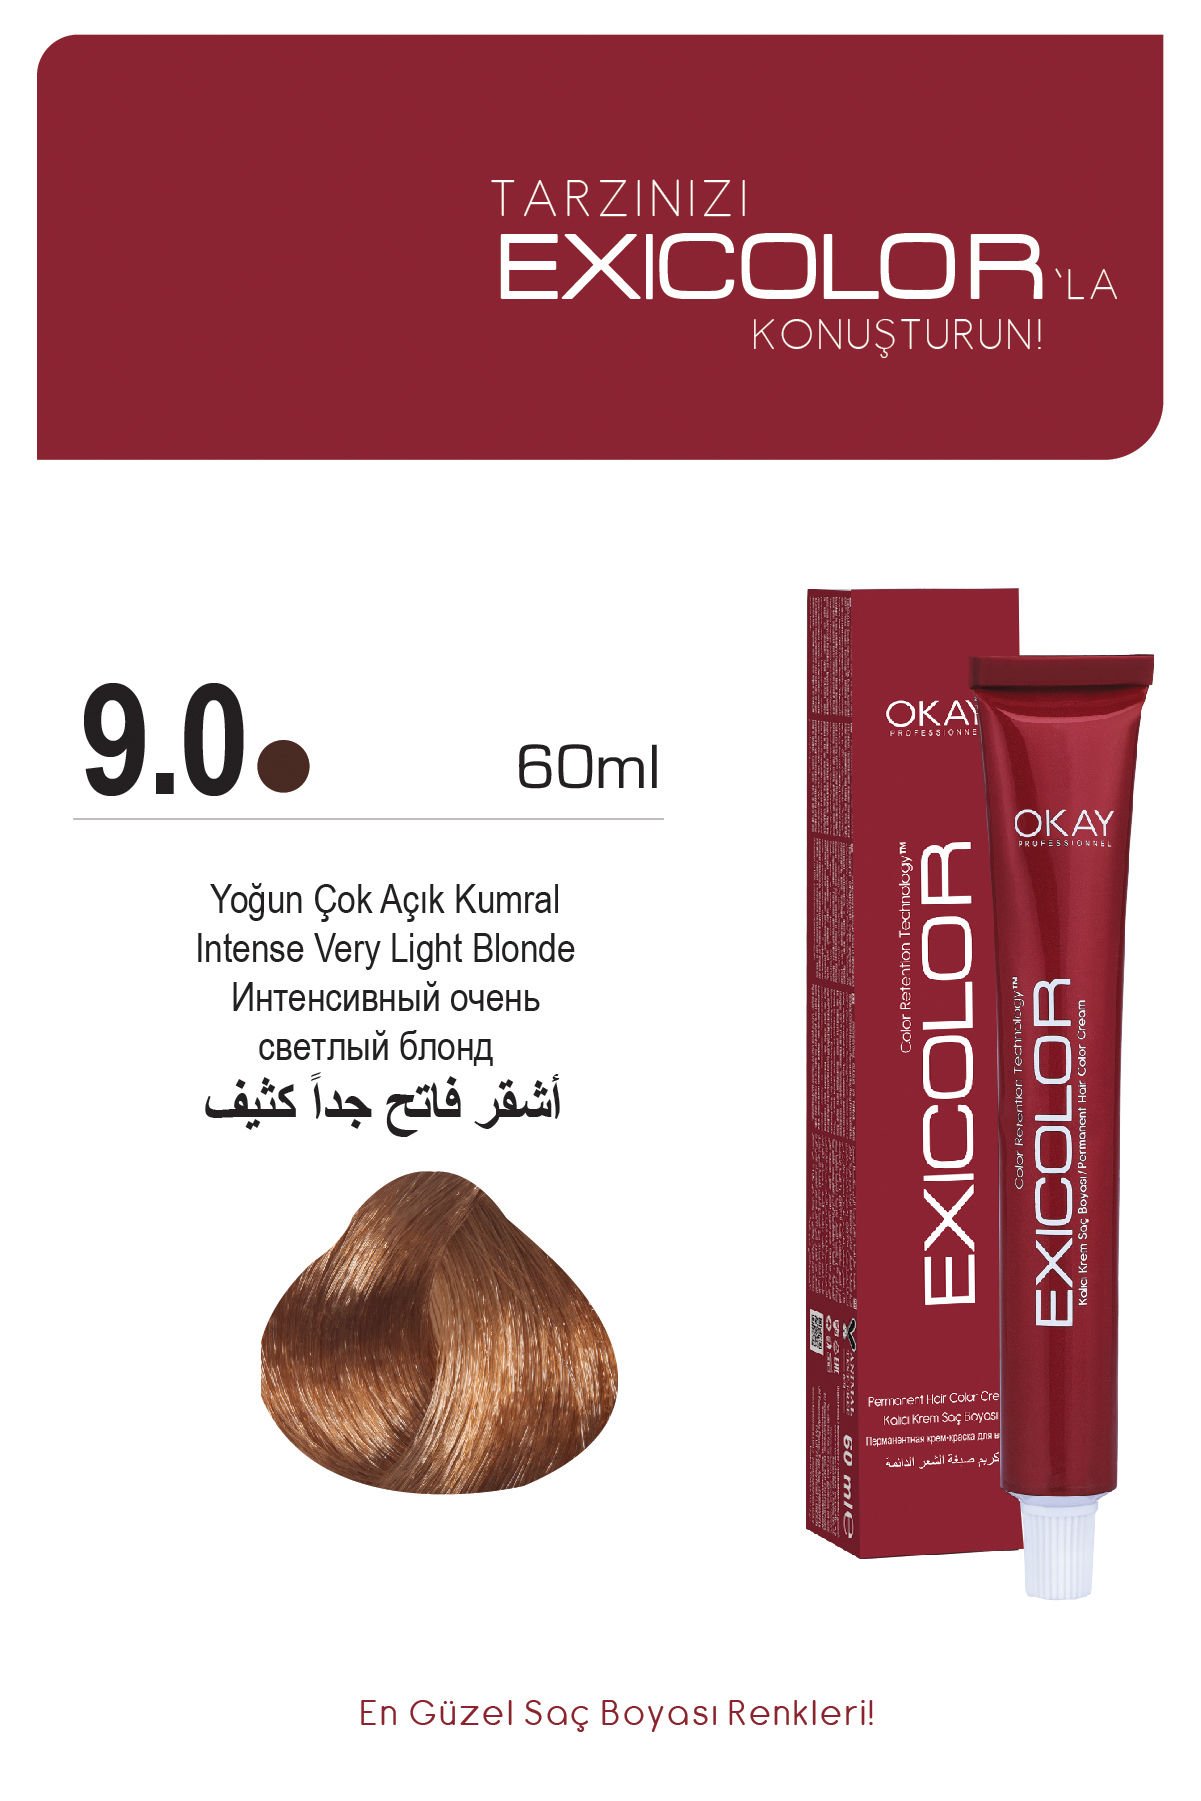 Exicolor 9.0 Yoğun Çok Açık Kumral - Kalıcı Krem Saç Boyası 60 ml Tüp